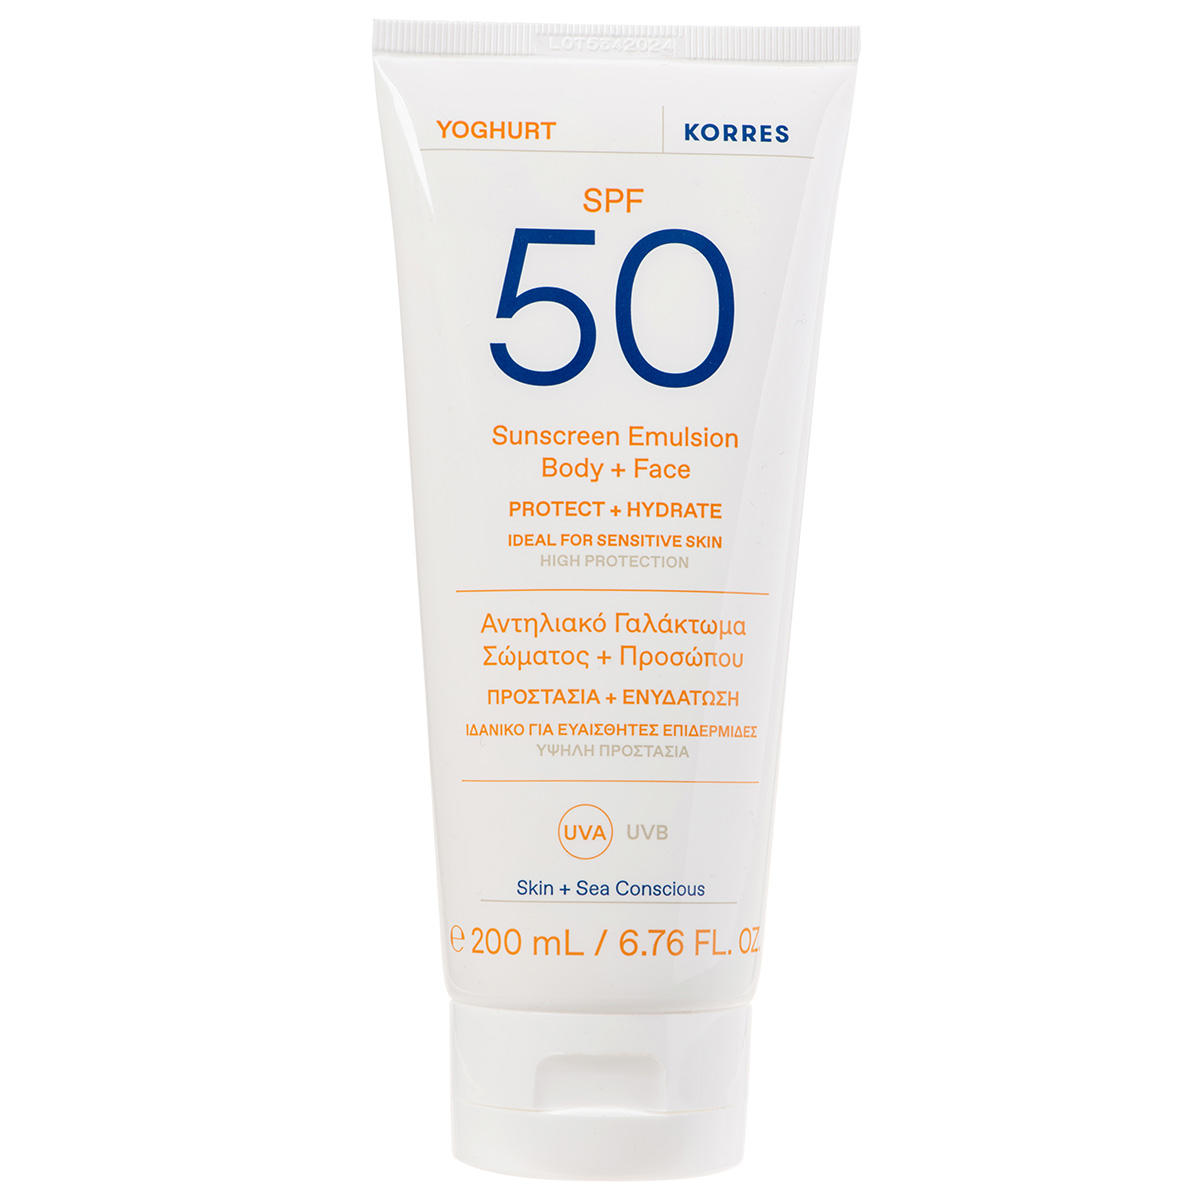 KORRES Yoghurt Sunscreen Emulsion Body + Face SPF 50 200 ml - 1